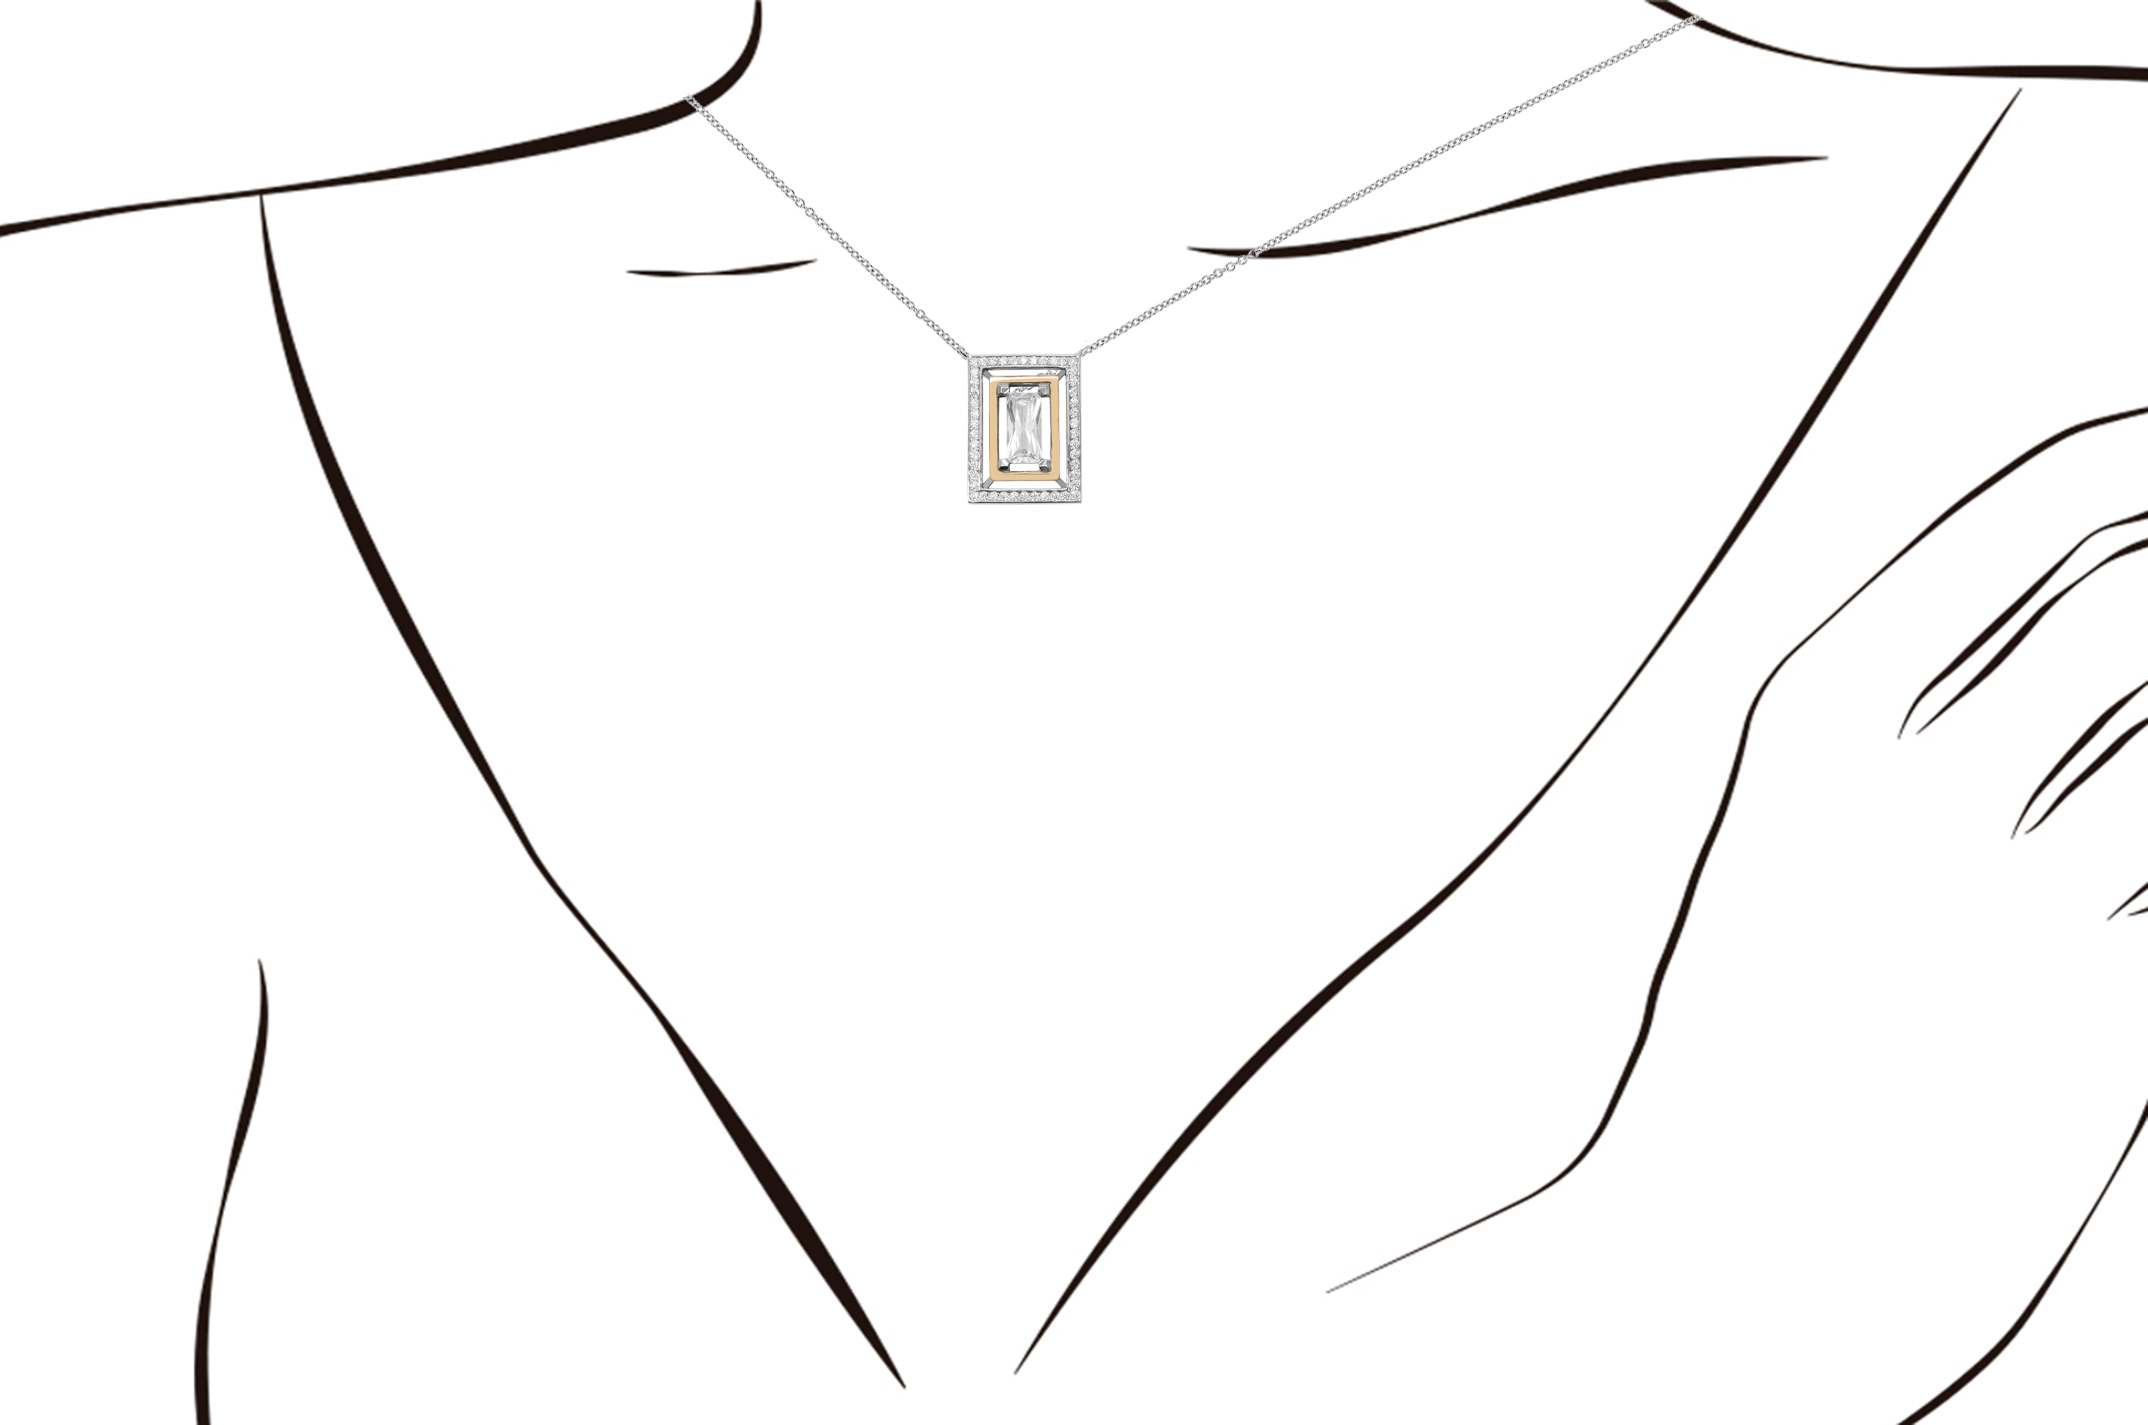 Joia: colar; Material: prata 925 e ouro 9 kt;Peso: 12 gr (prata) e 0.9 gr (ouro);Pedras: zirconias;Cor: bicolor;Tamanho: ;Género: mulher